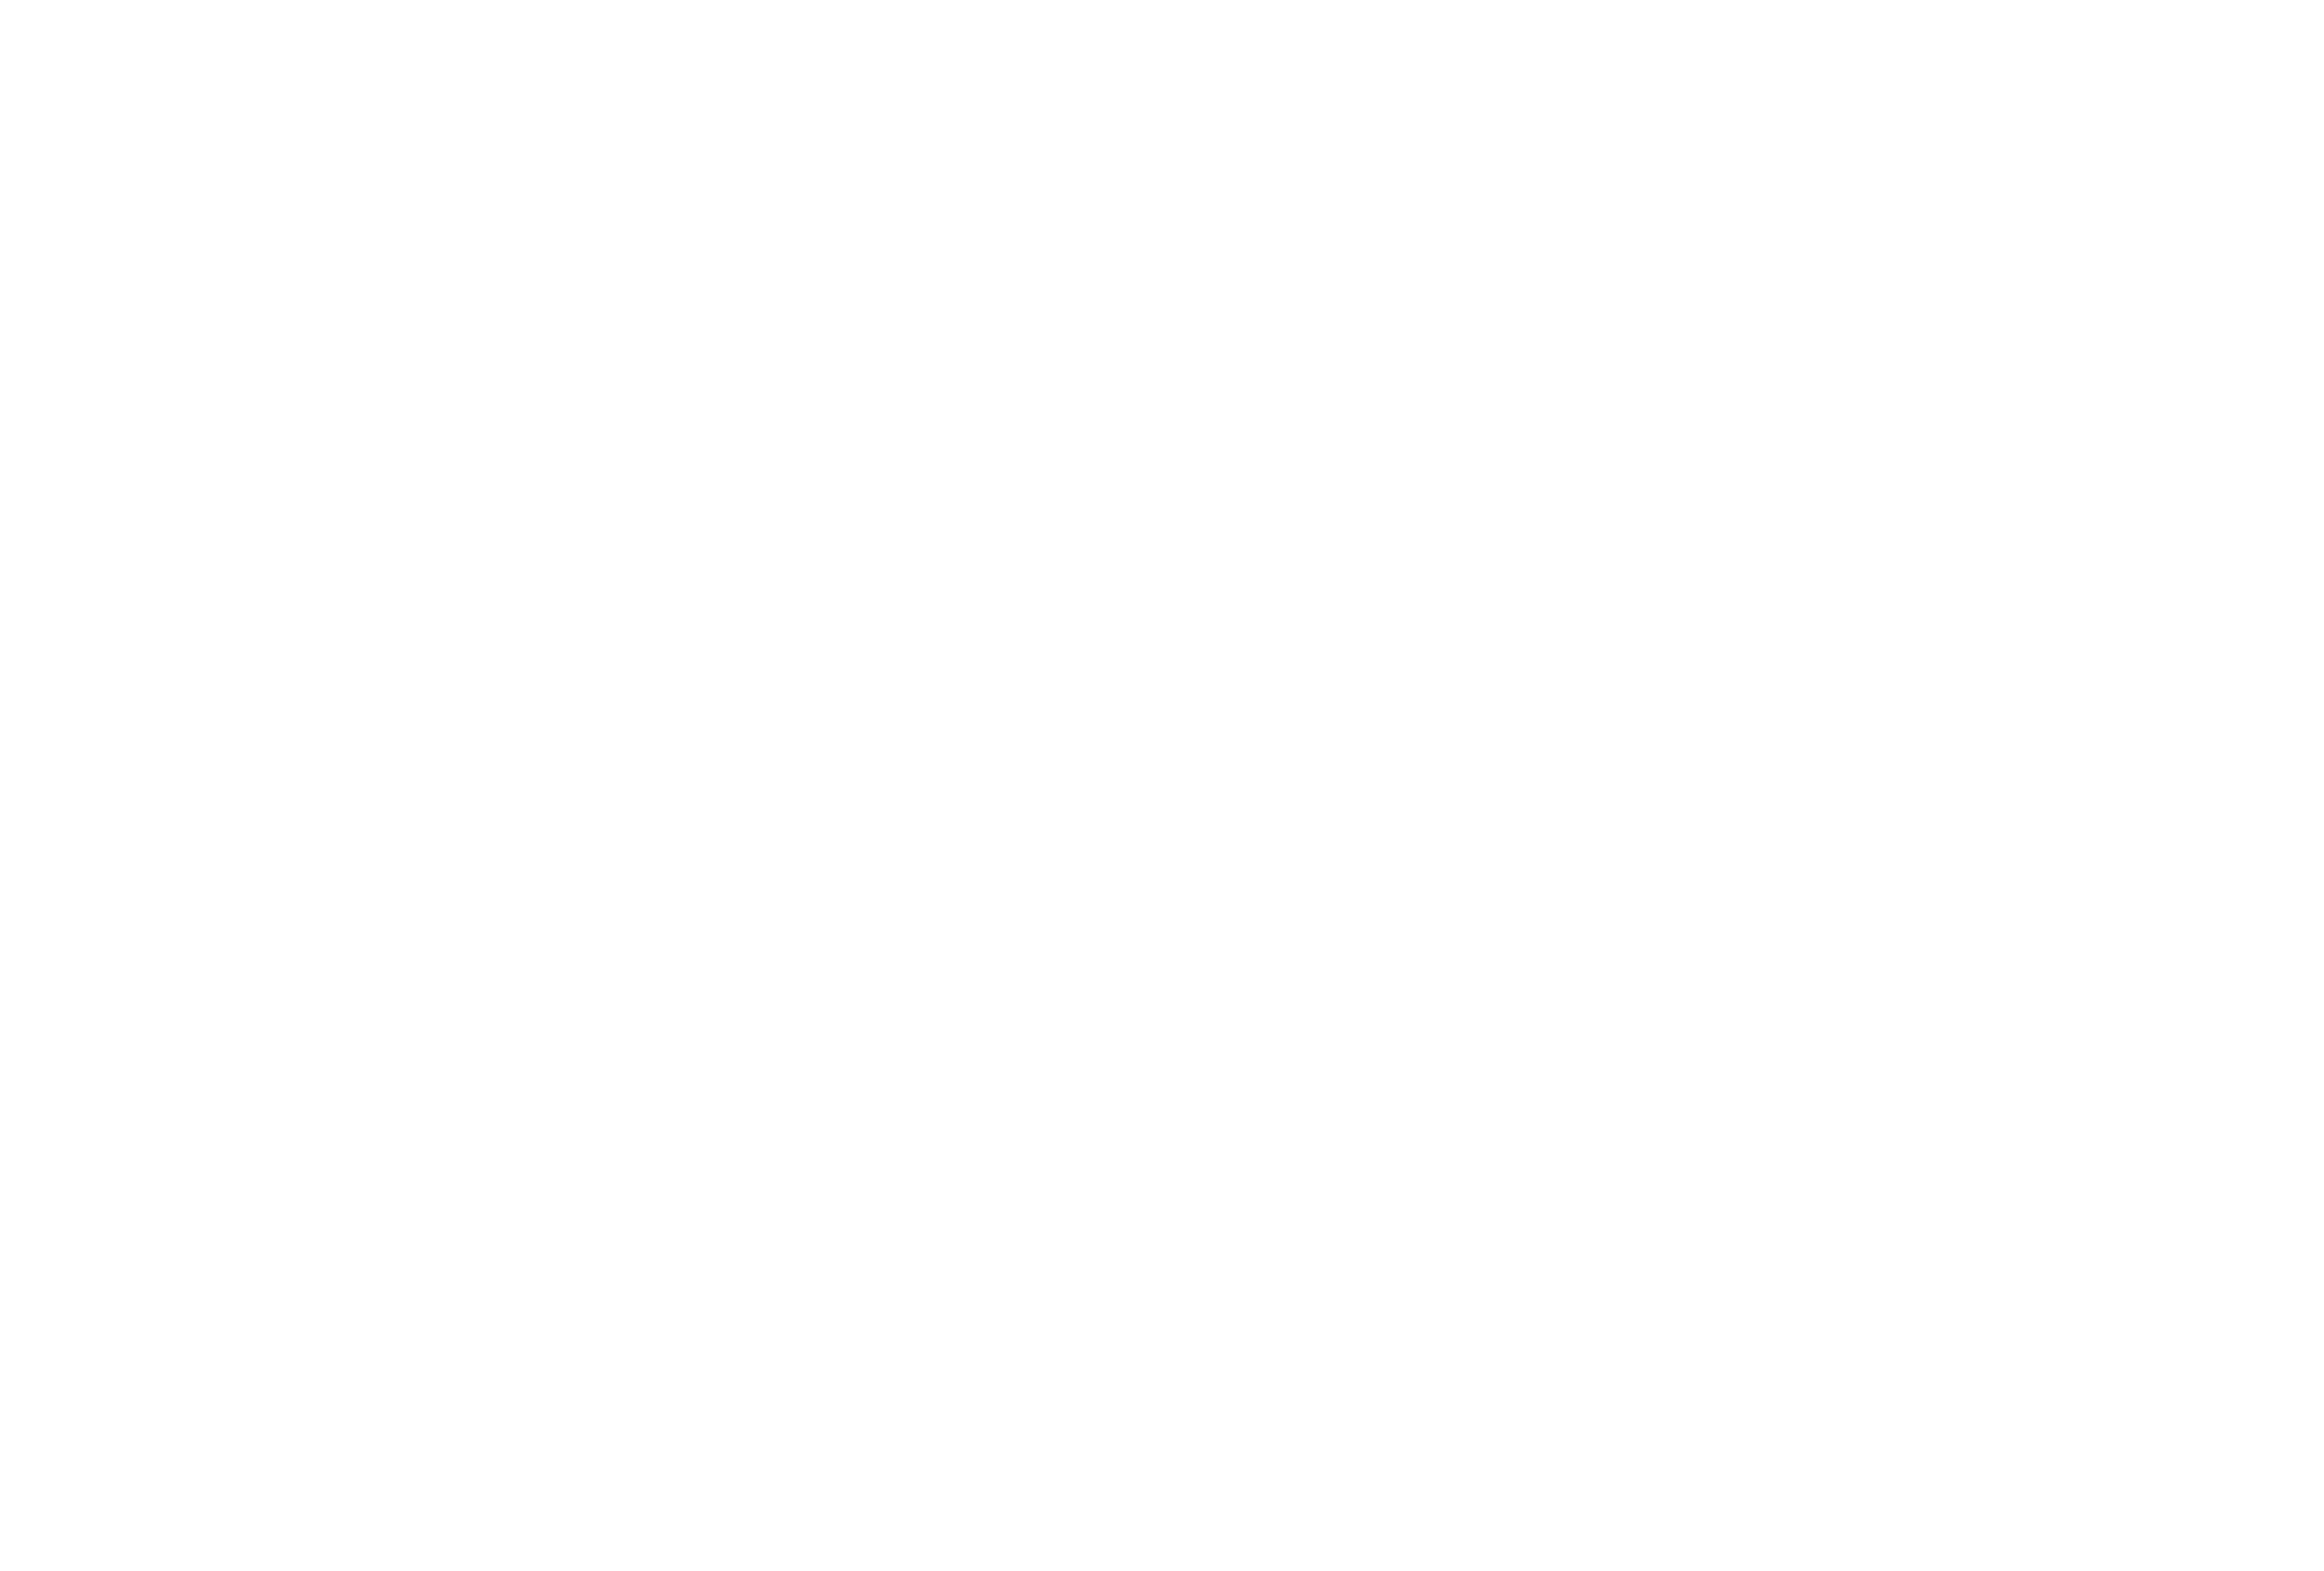 explorethe661.com